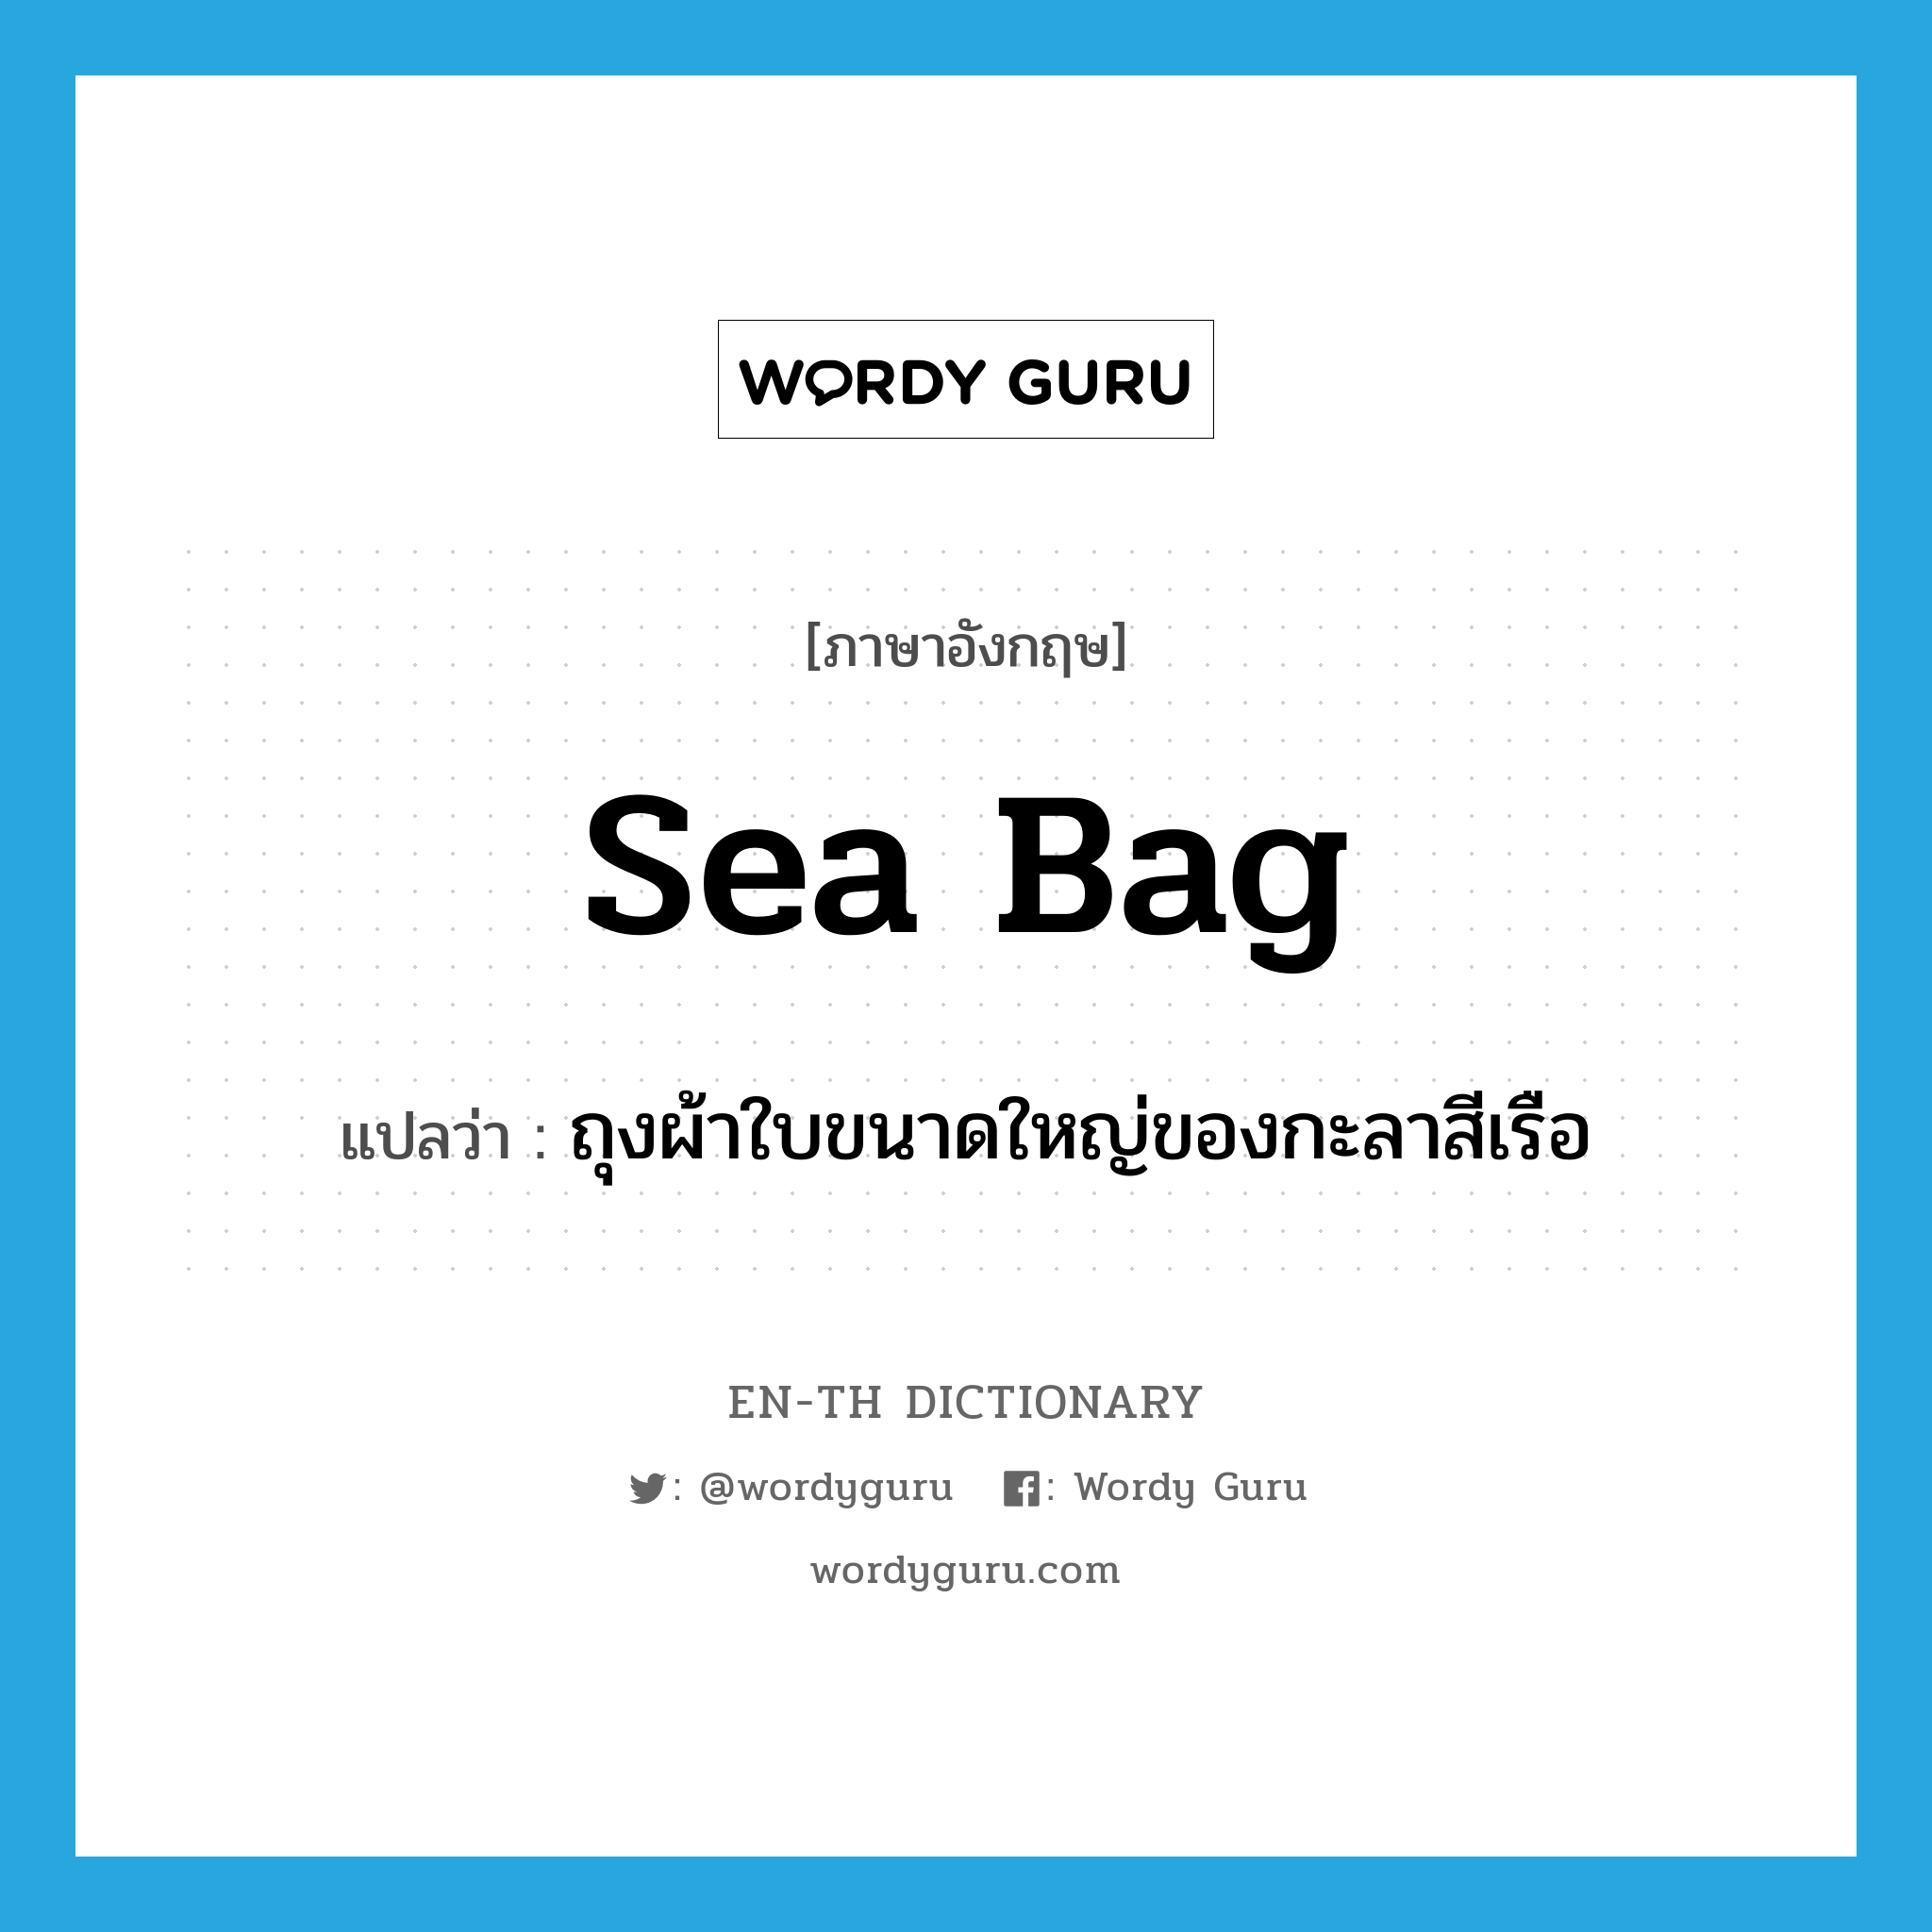 sea bag แปลว่า?, คำศัพท์ภาษาอังกฤษ sea bag แปลว่า ถุงผ้าใบขนาดใหญ่ของกะลาสีเรือ ประเภท N หมวด N